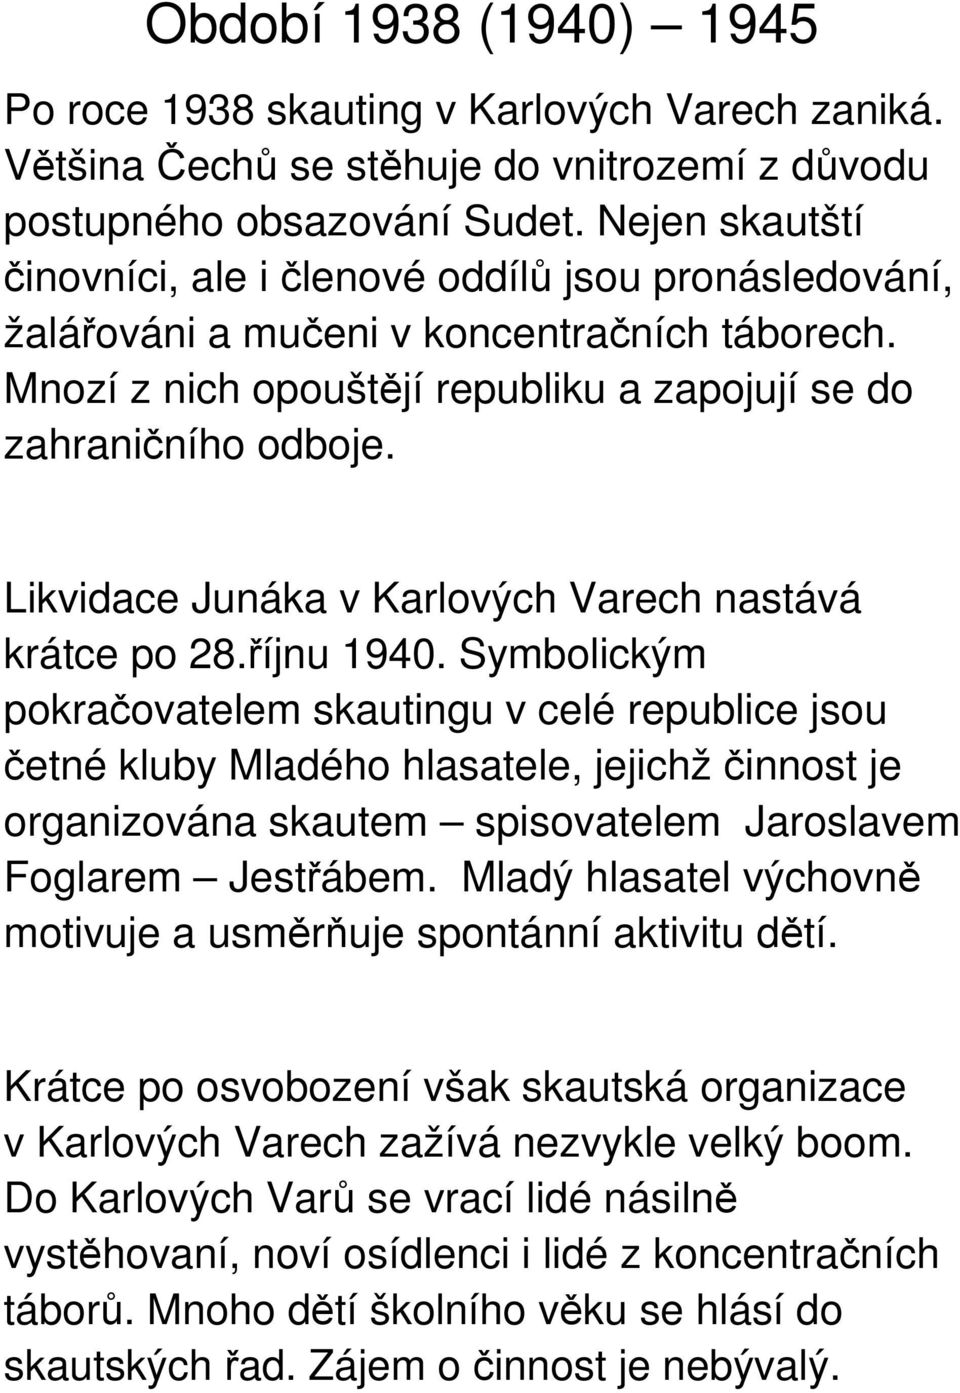 Likvidace Junáka v Karlových Varech nastává krátce po 28.říjnu 1940.